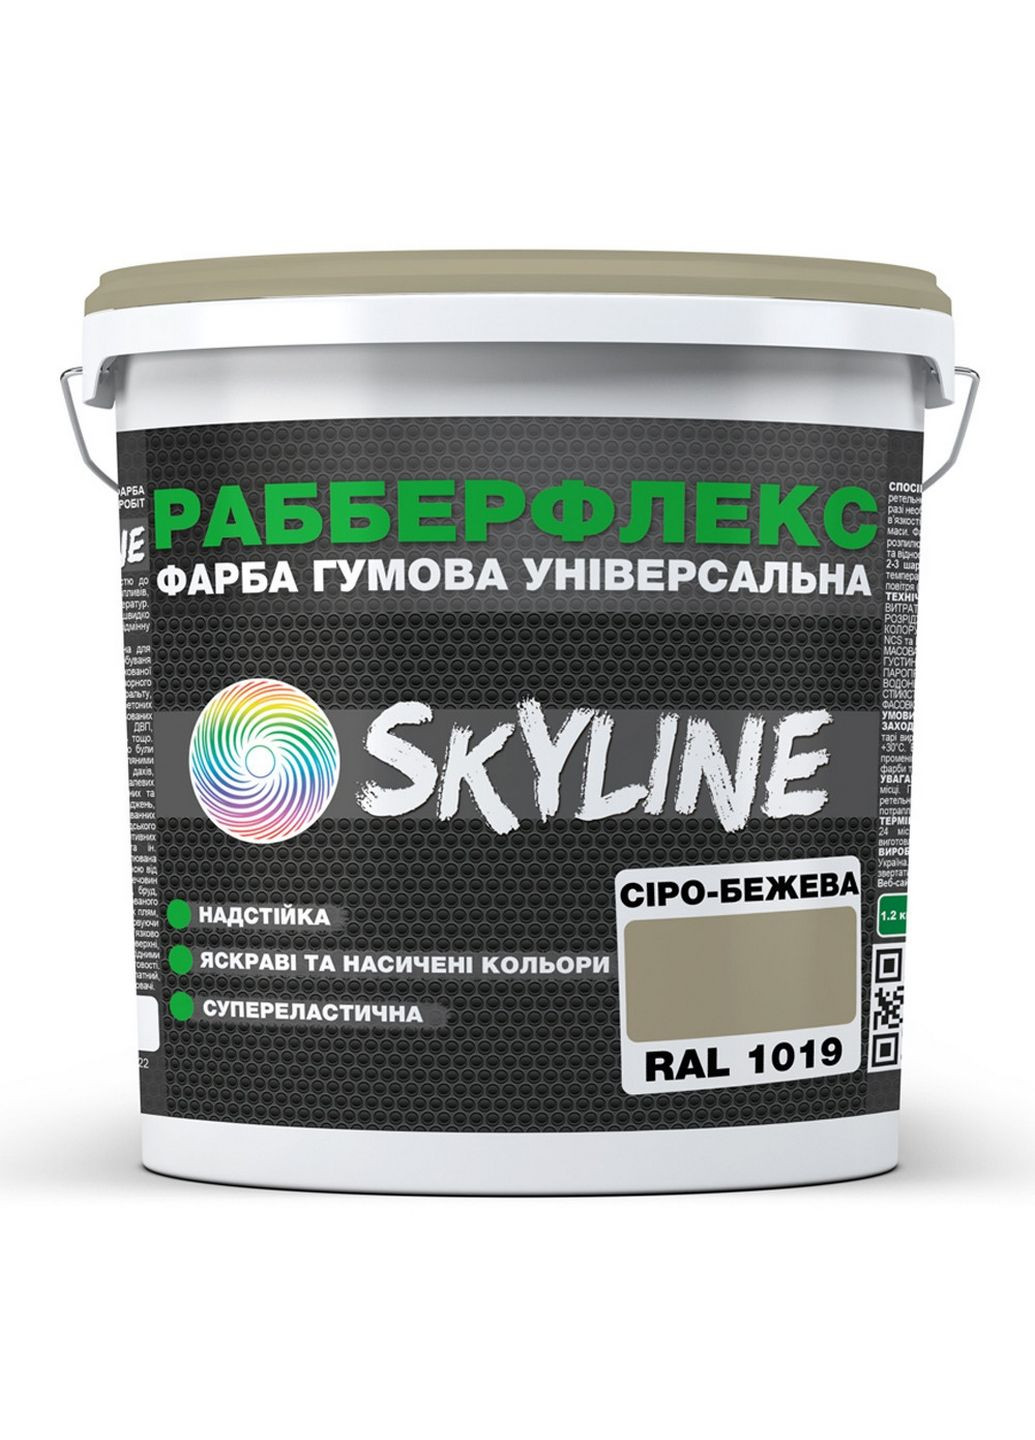 Надстійка фарба гумова супереластична «РабберФлекс» 6 кг SkyLine (289366626)